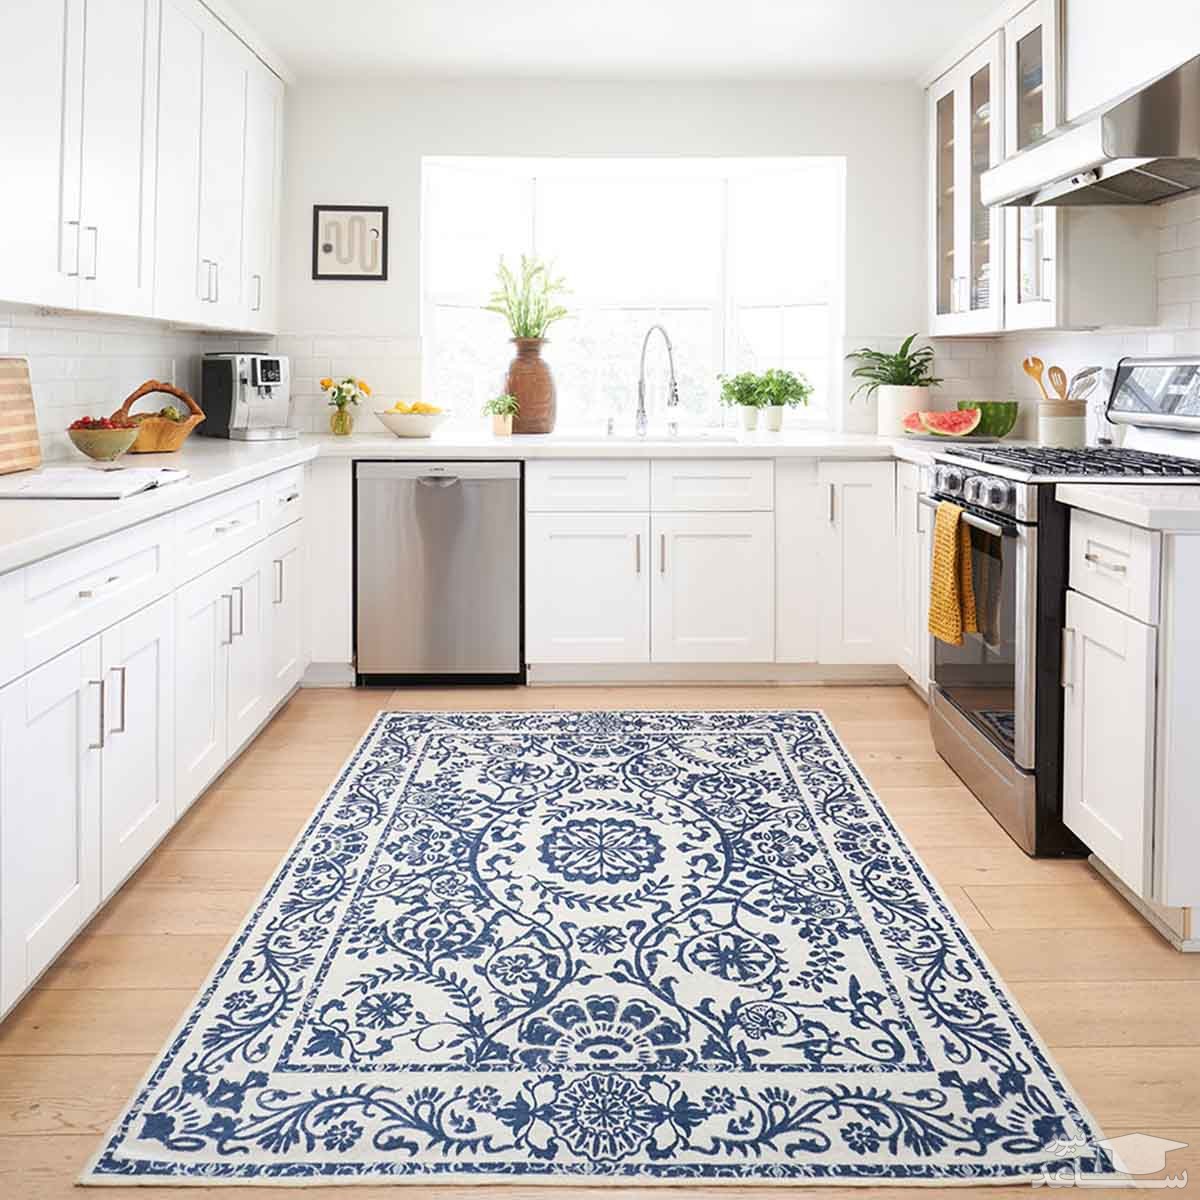 راهنمای انتخاب فرش و گلیم های زیبا برای آشپزخانه